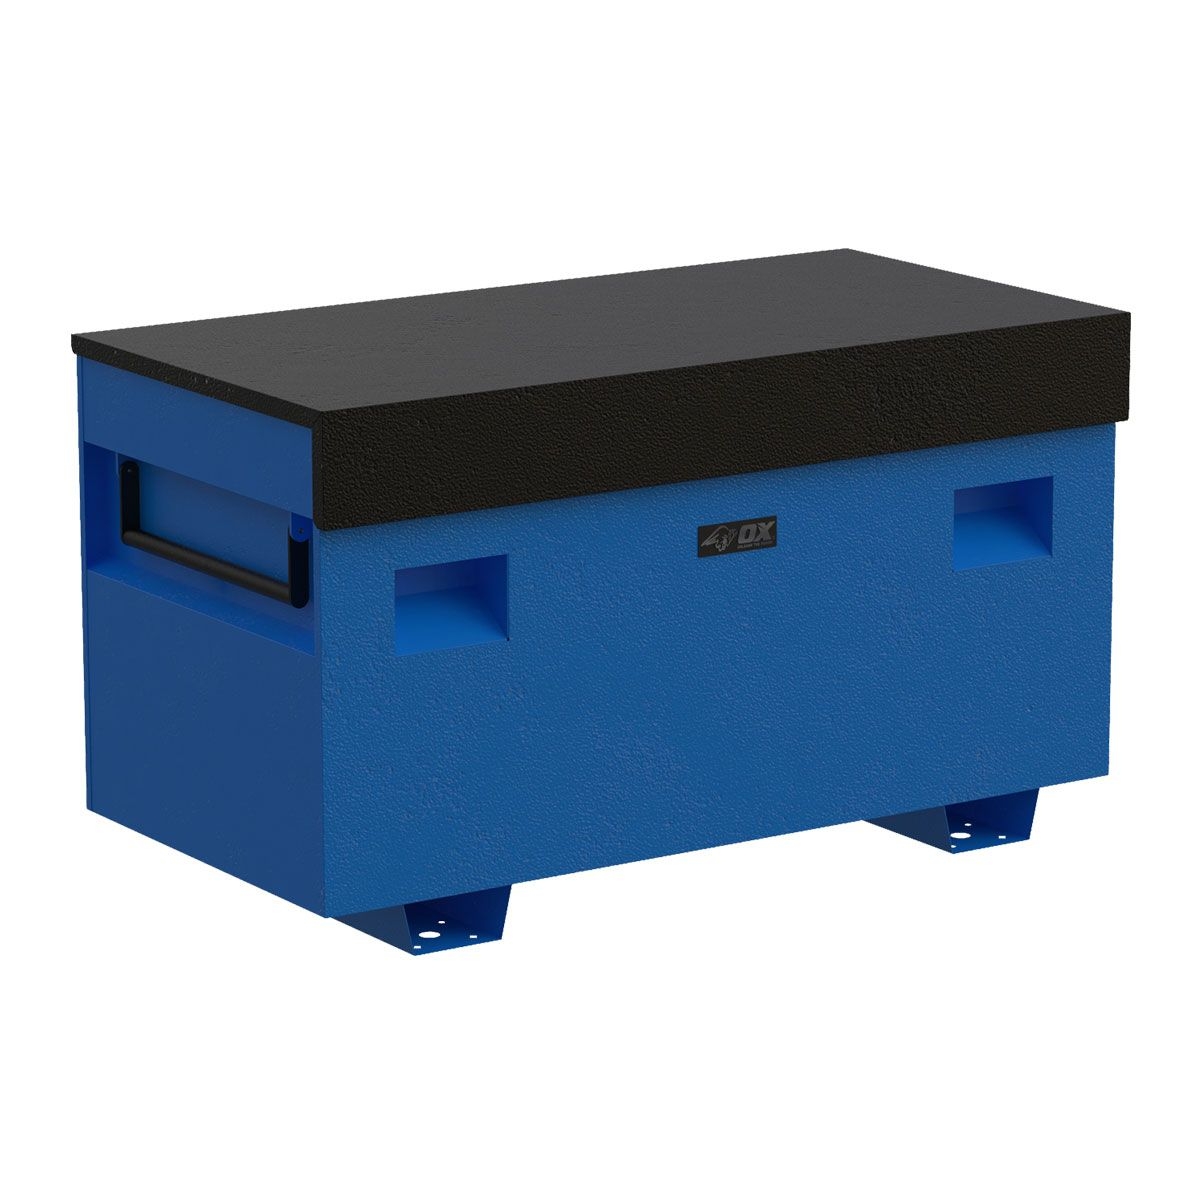 OX Pro Site Box Black / Blue (1230L x 636D x 700H)